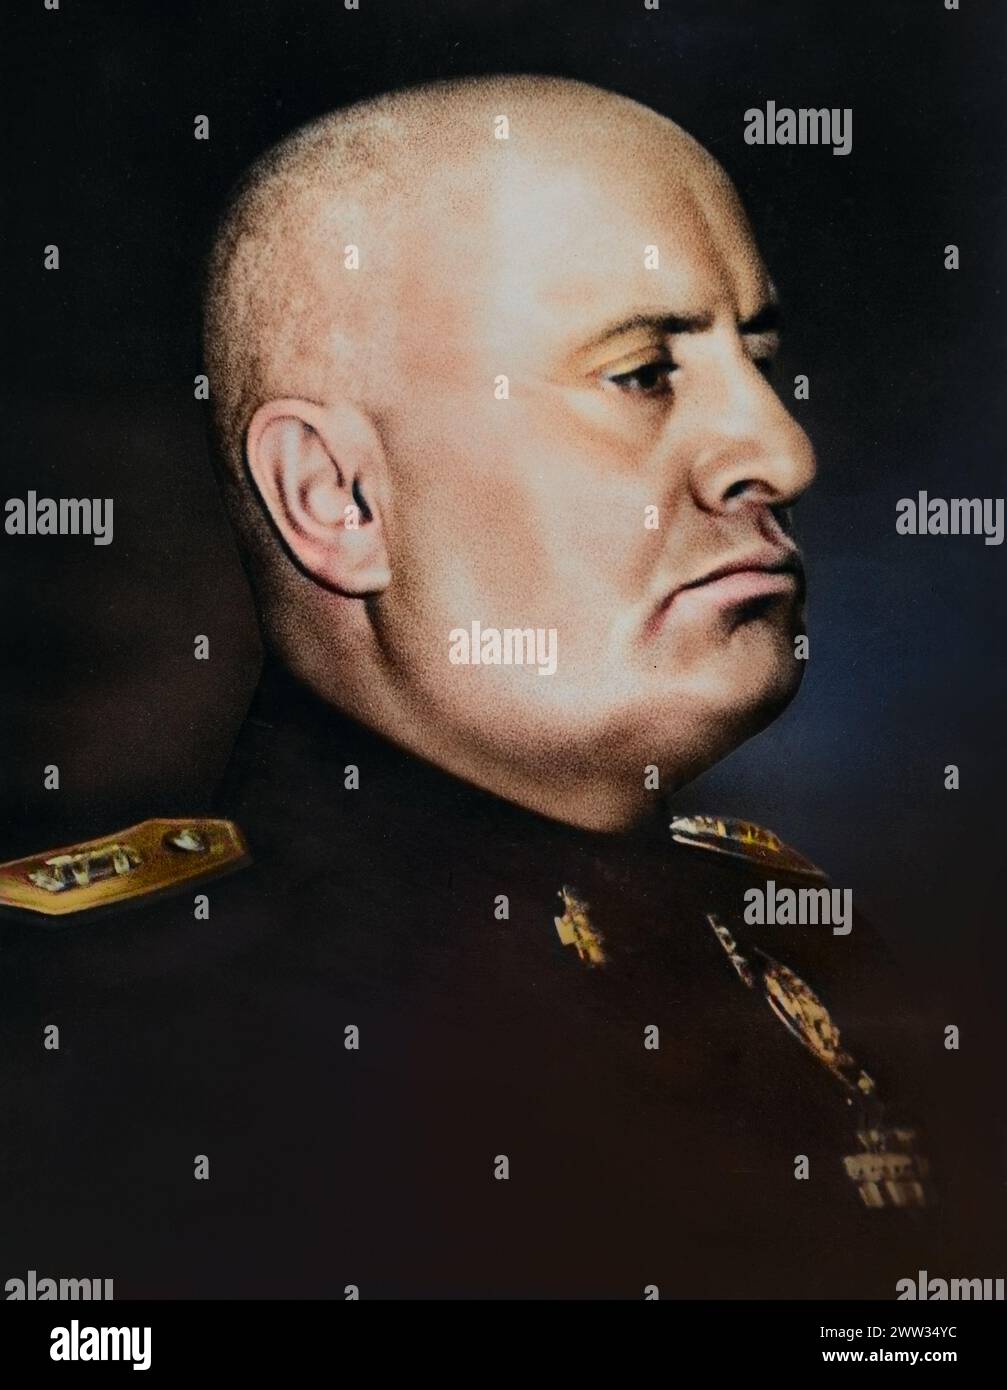 Ritratto di Benito Mussolini come dittatore d'Italia (tra il 1922 e il 1943), pubblicato nel 1943 per commemorare il suo 60° compleanno - colorato Foto Stock